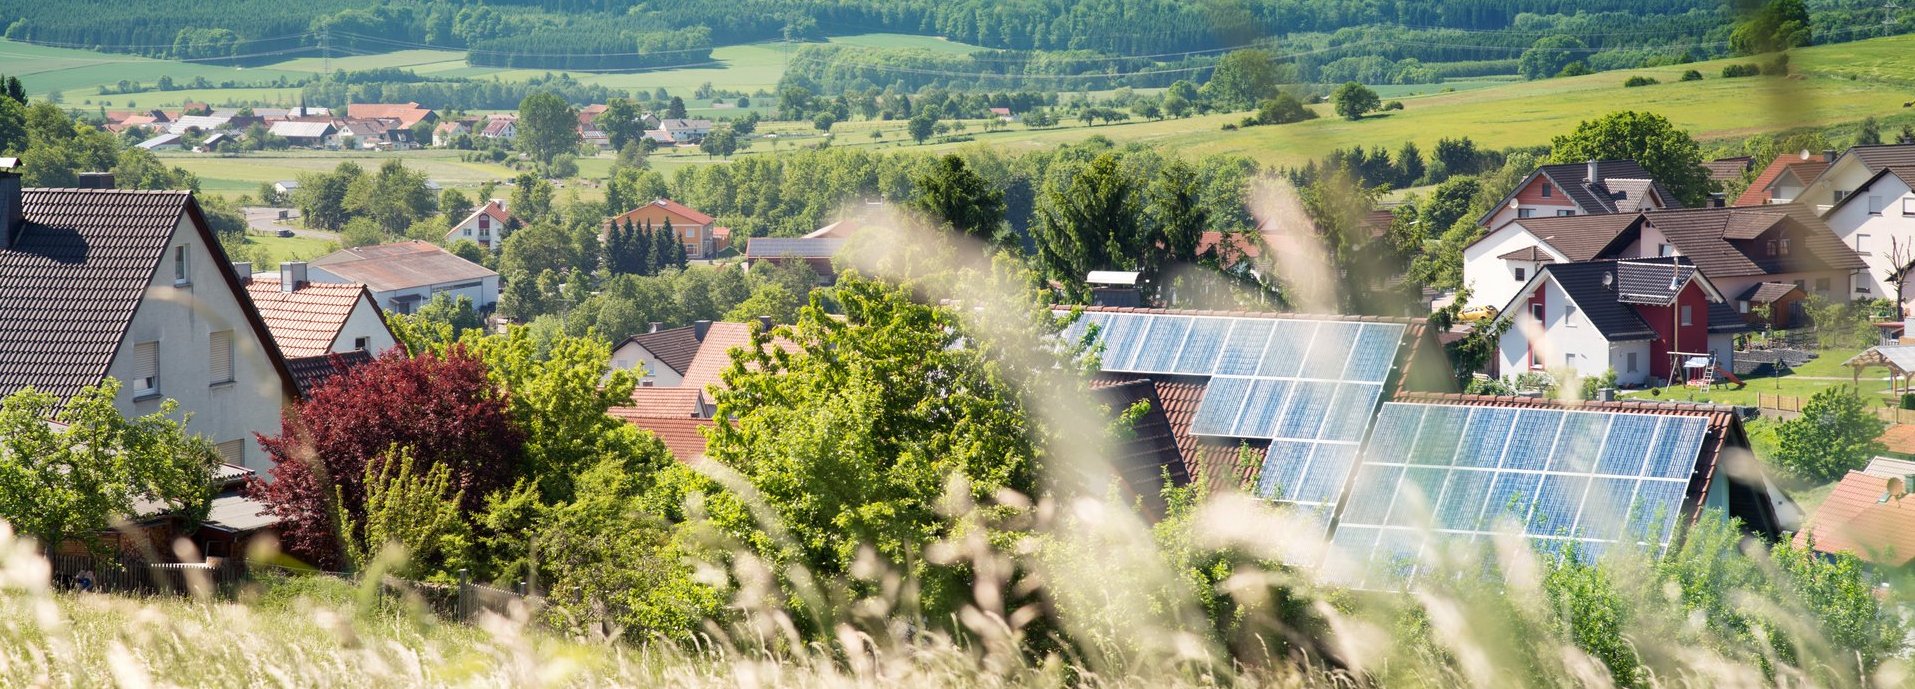 Solarzellen im Hintergrund auf einem Haus in einer Siedlung umgeben von Natur